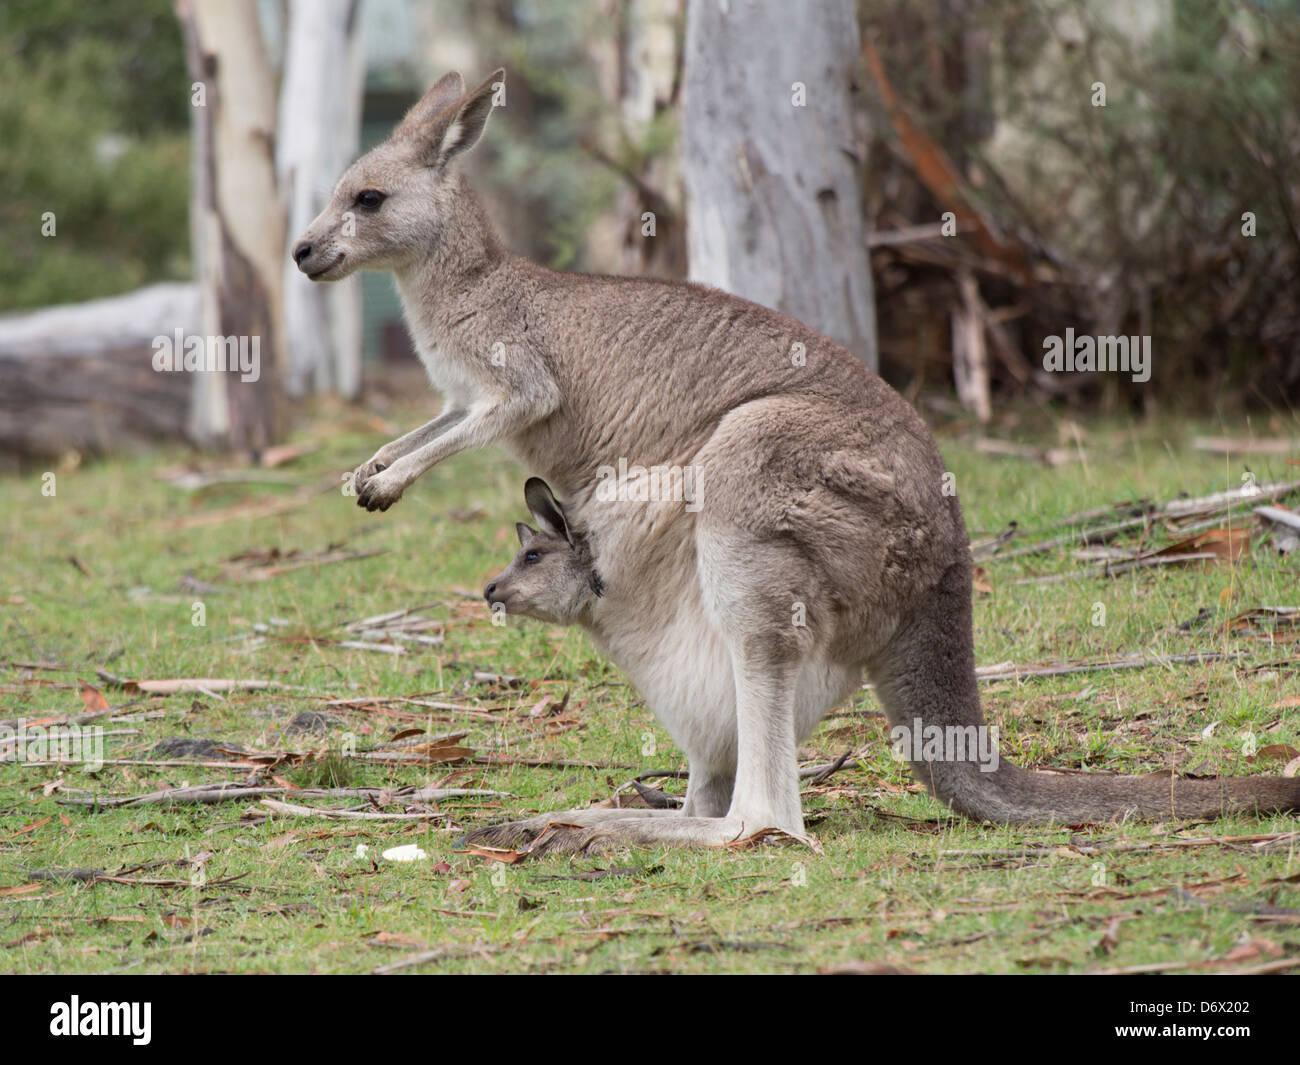 Mutter Känguru stehend mit Ohren zurück und Baby Joey aus Beutel hängen  Stockfotografie - Alamy